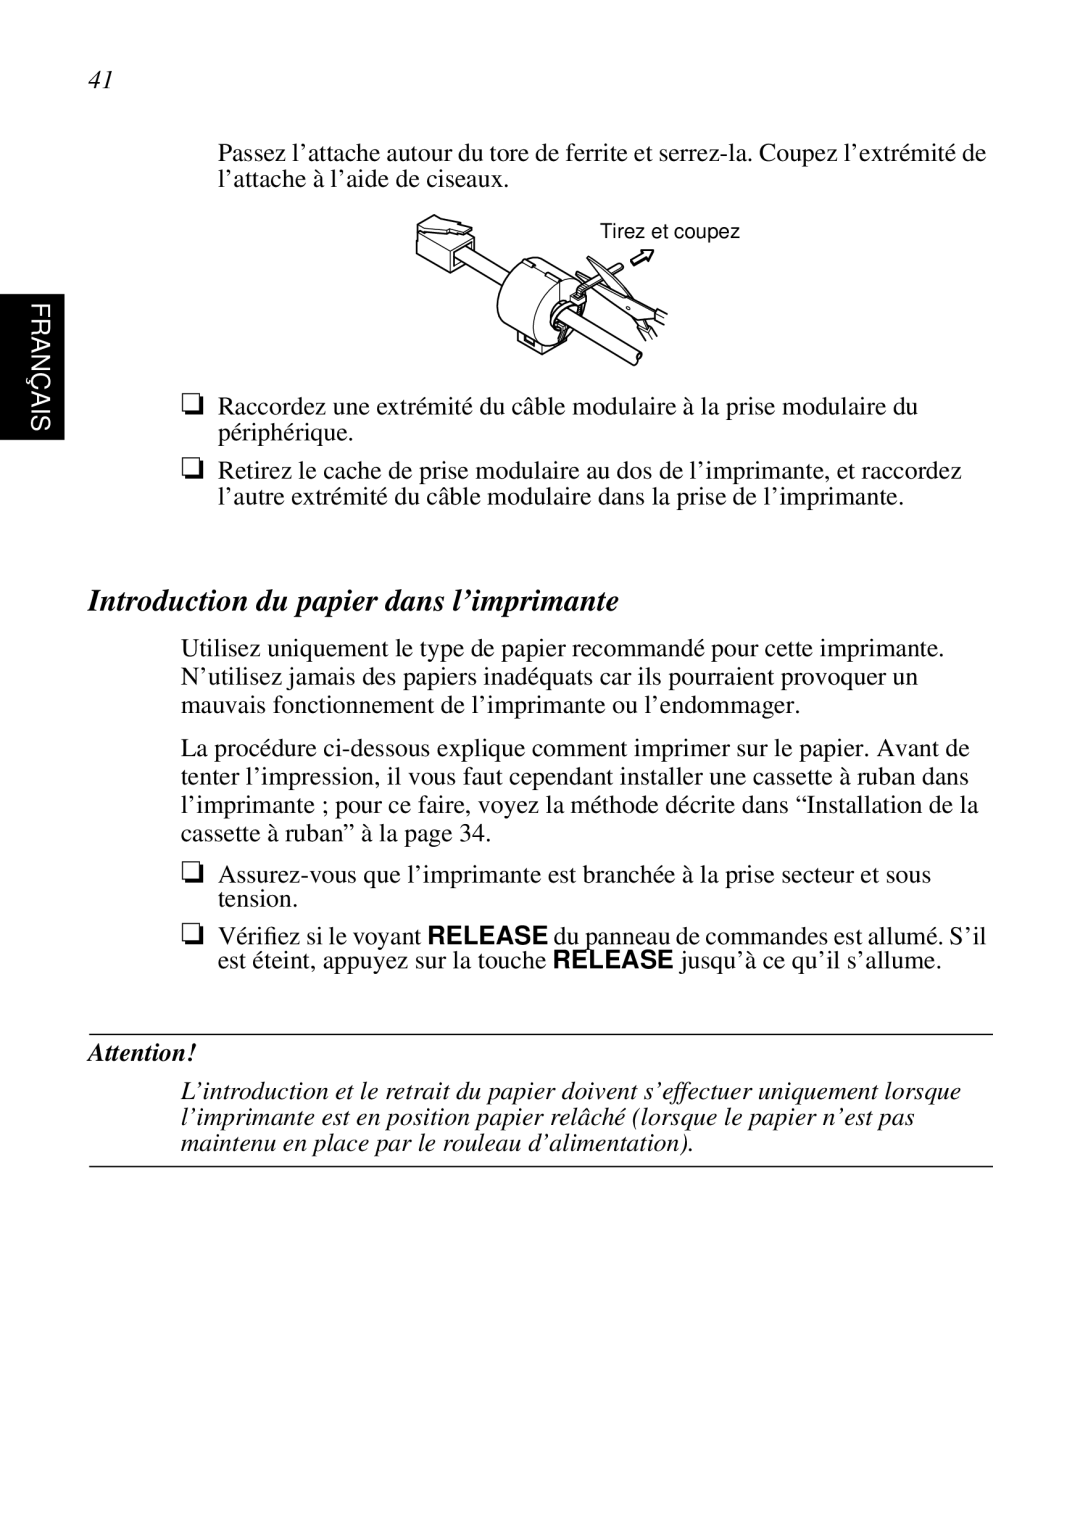 Star Micronics SP298 user manual Introduction du papier dans l’imprimante, Français 